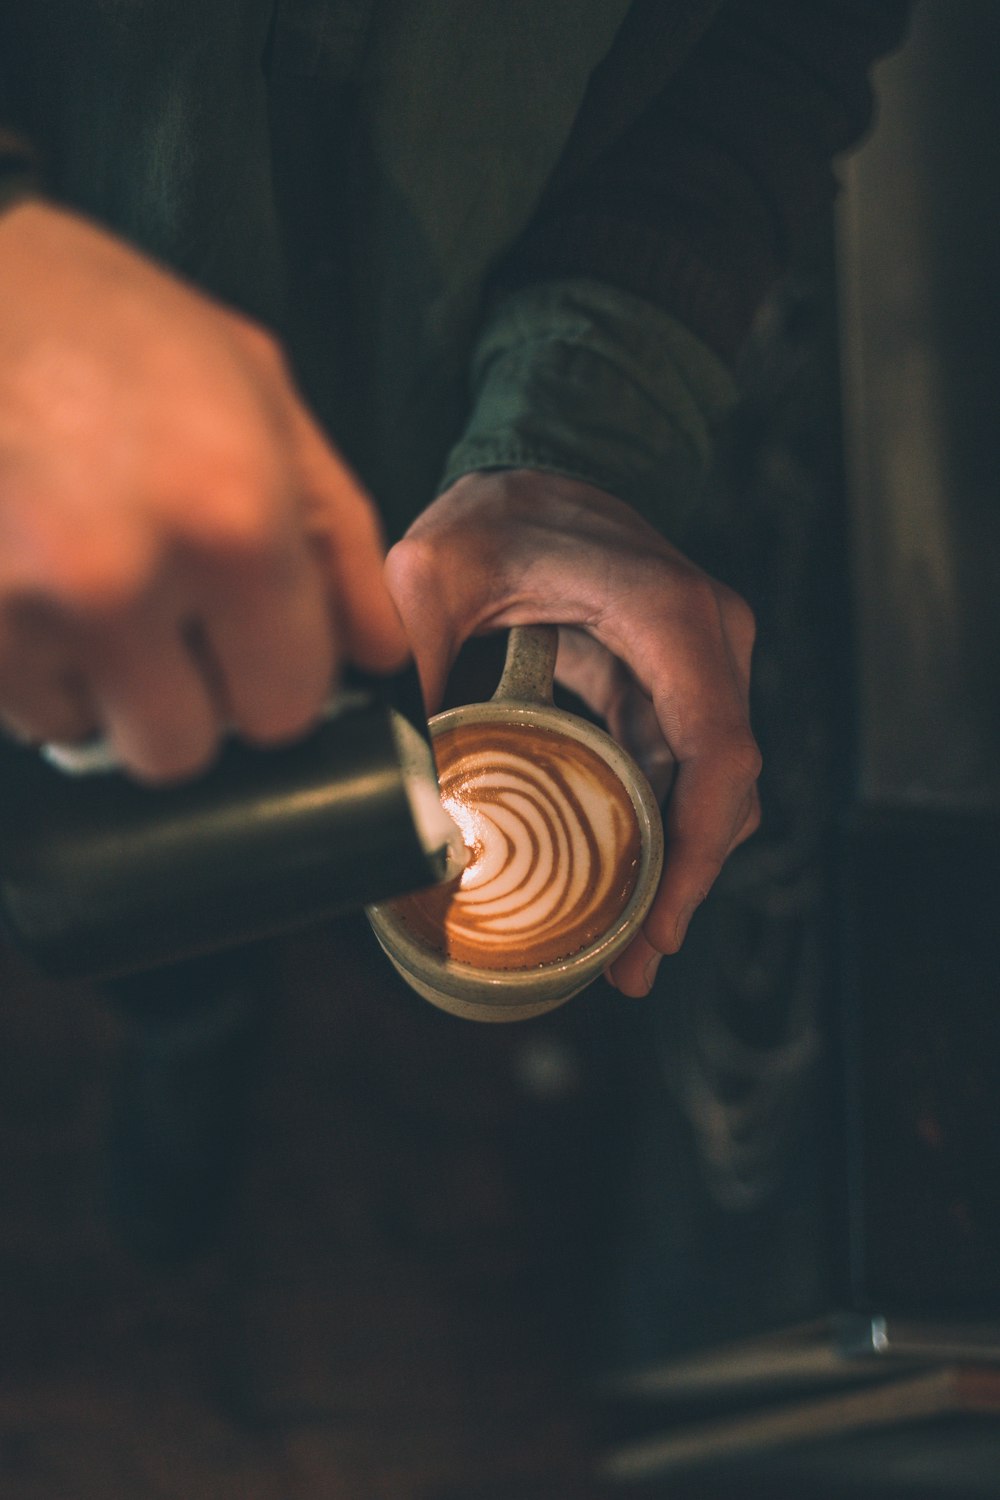 Mann gießt Latte Art in eine mit Kaffee gefüllte Tasse